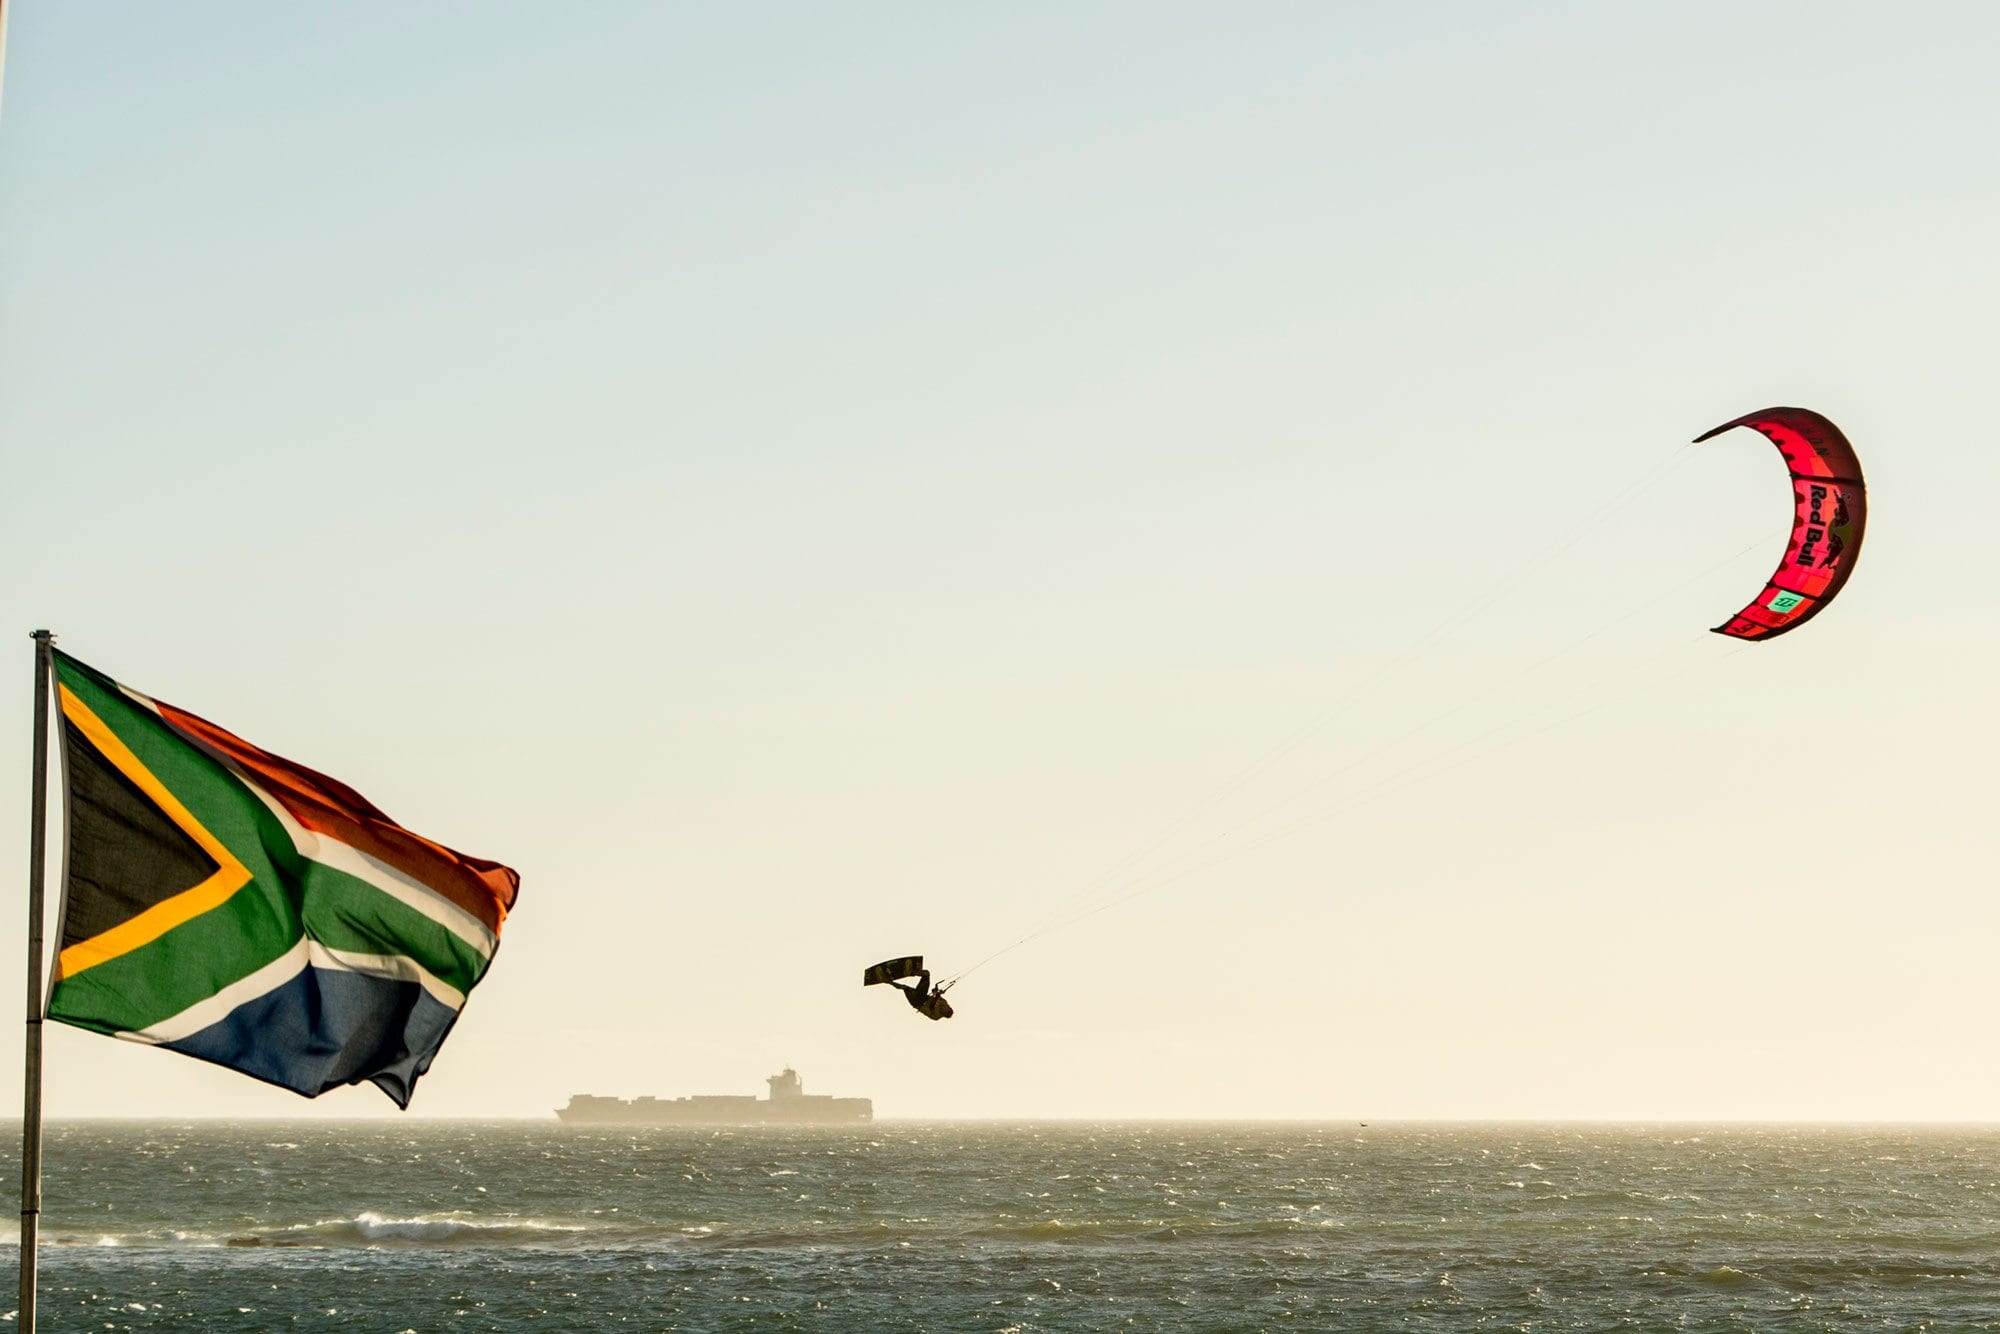 Ruben Lenten flies high amongst the South African flag.